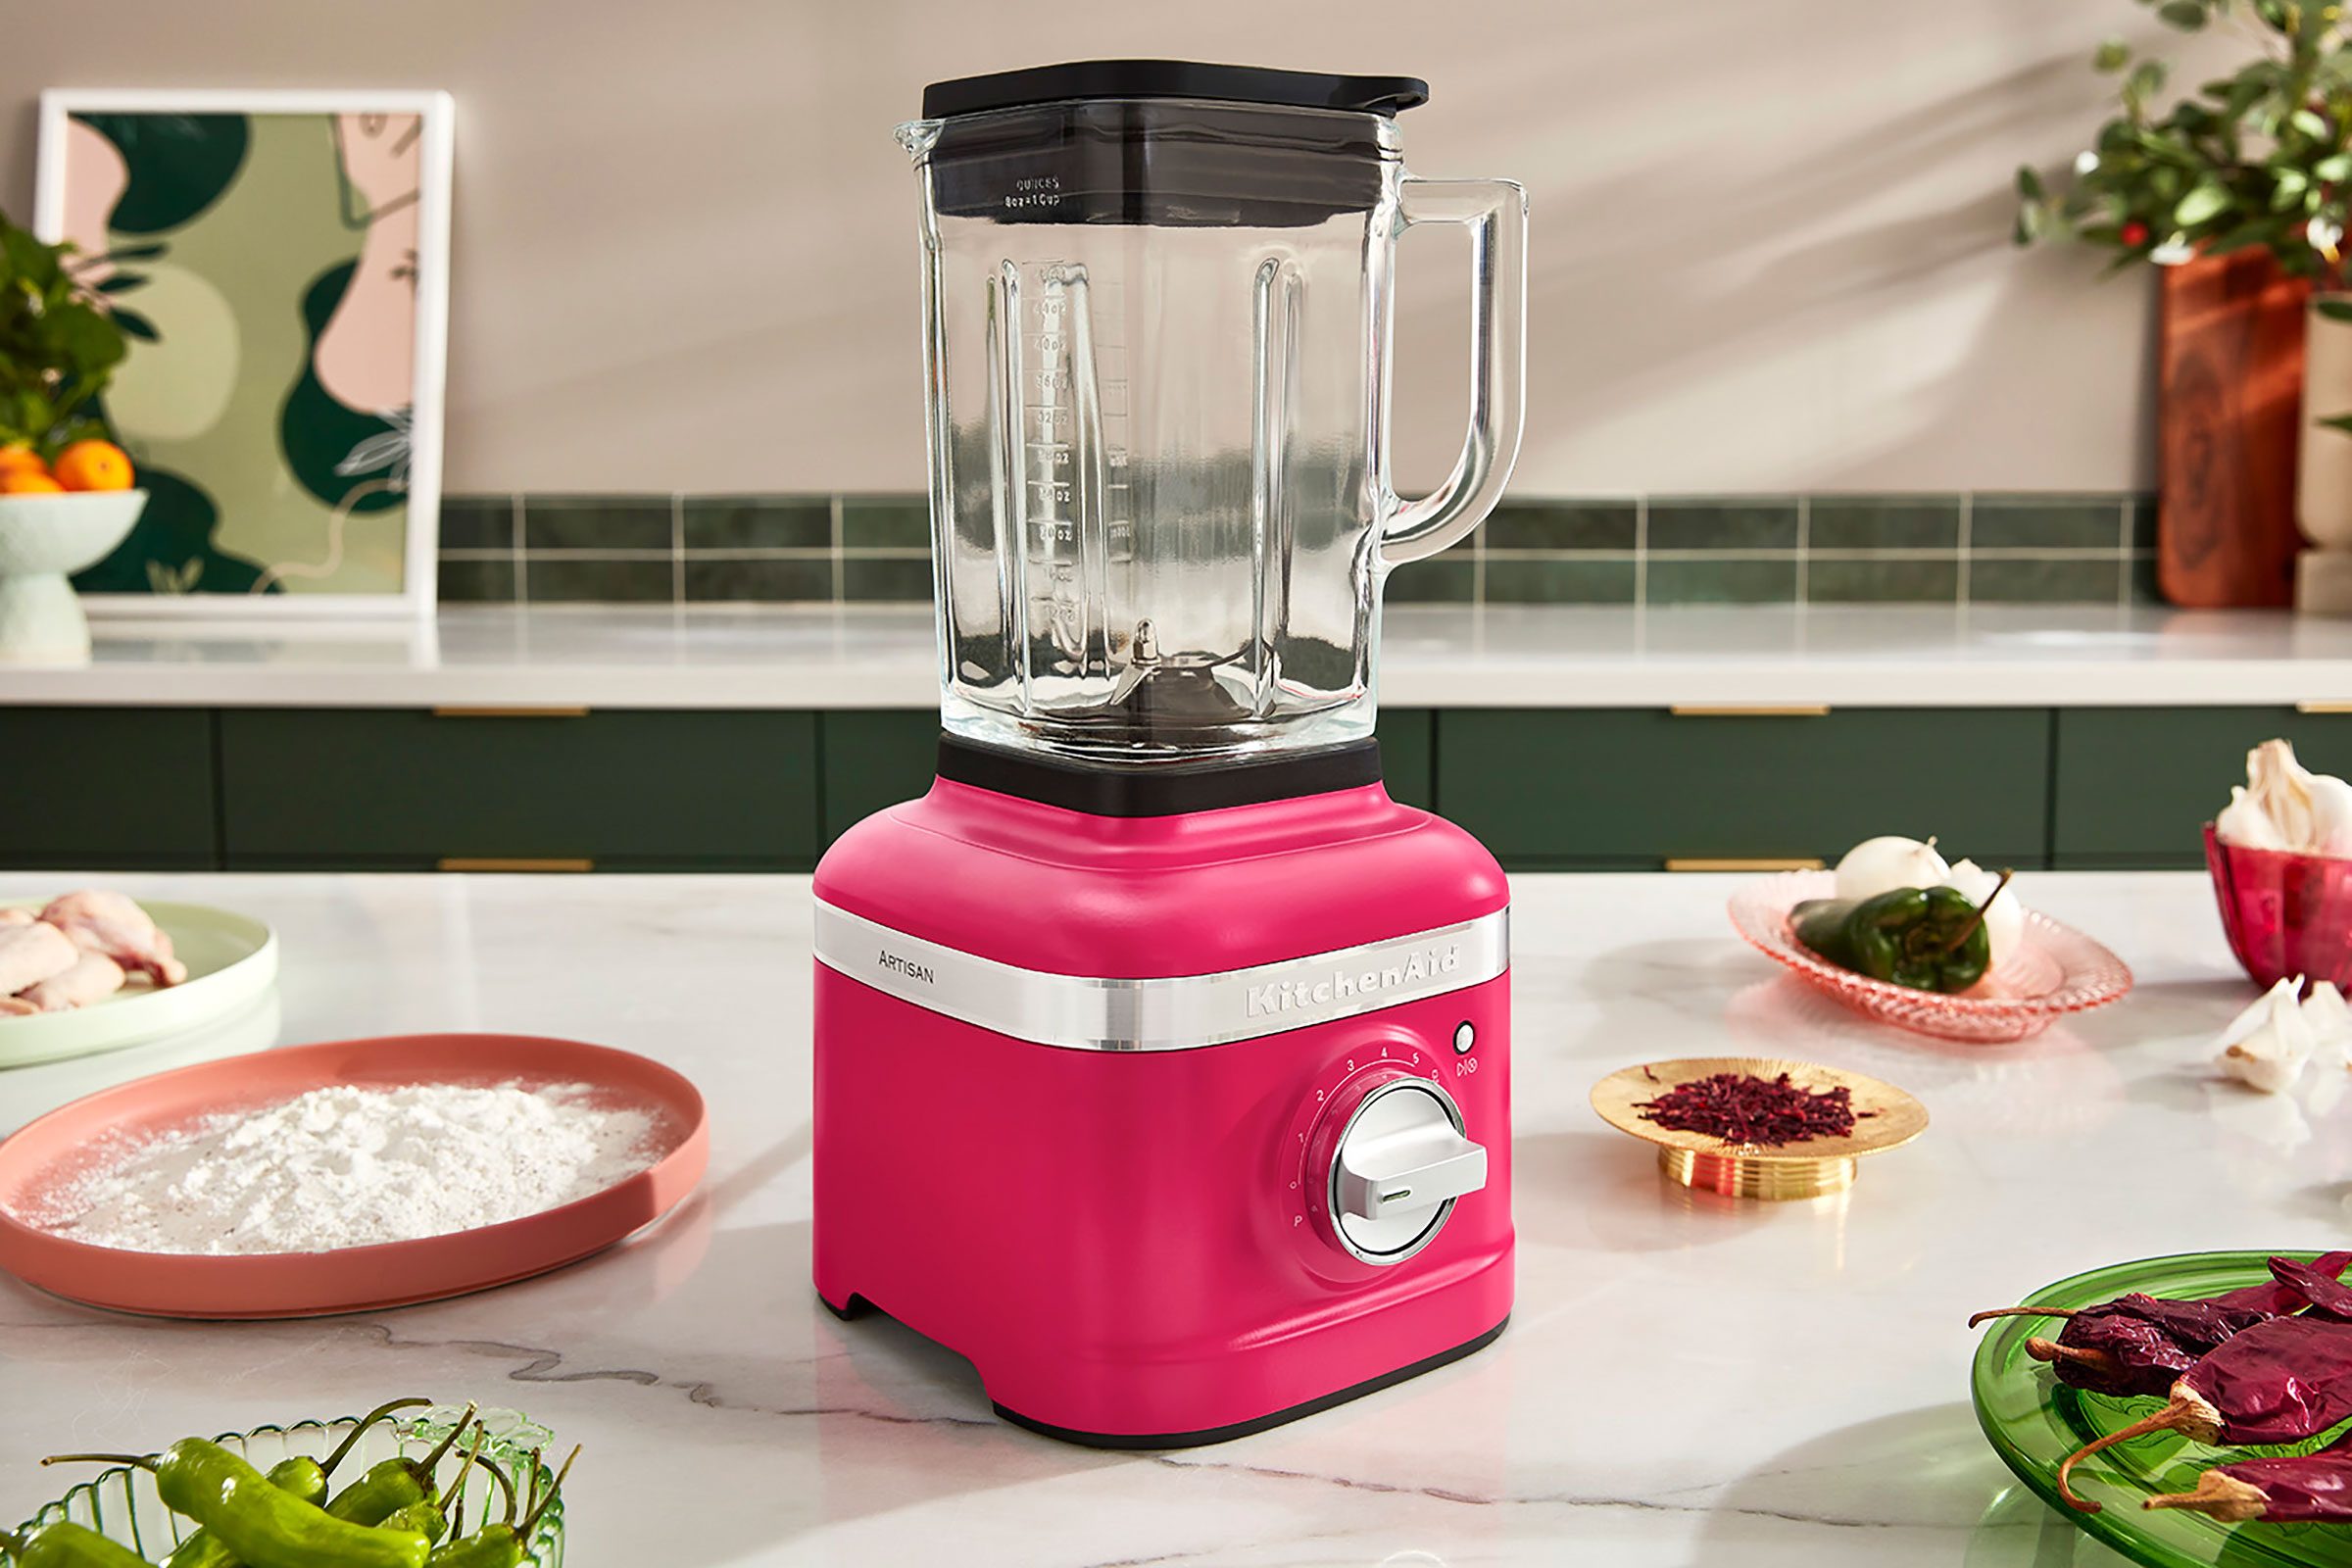 KitchenAid Reveals Four New Mixer Colors - New KitchenAid Colors